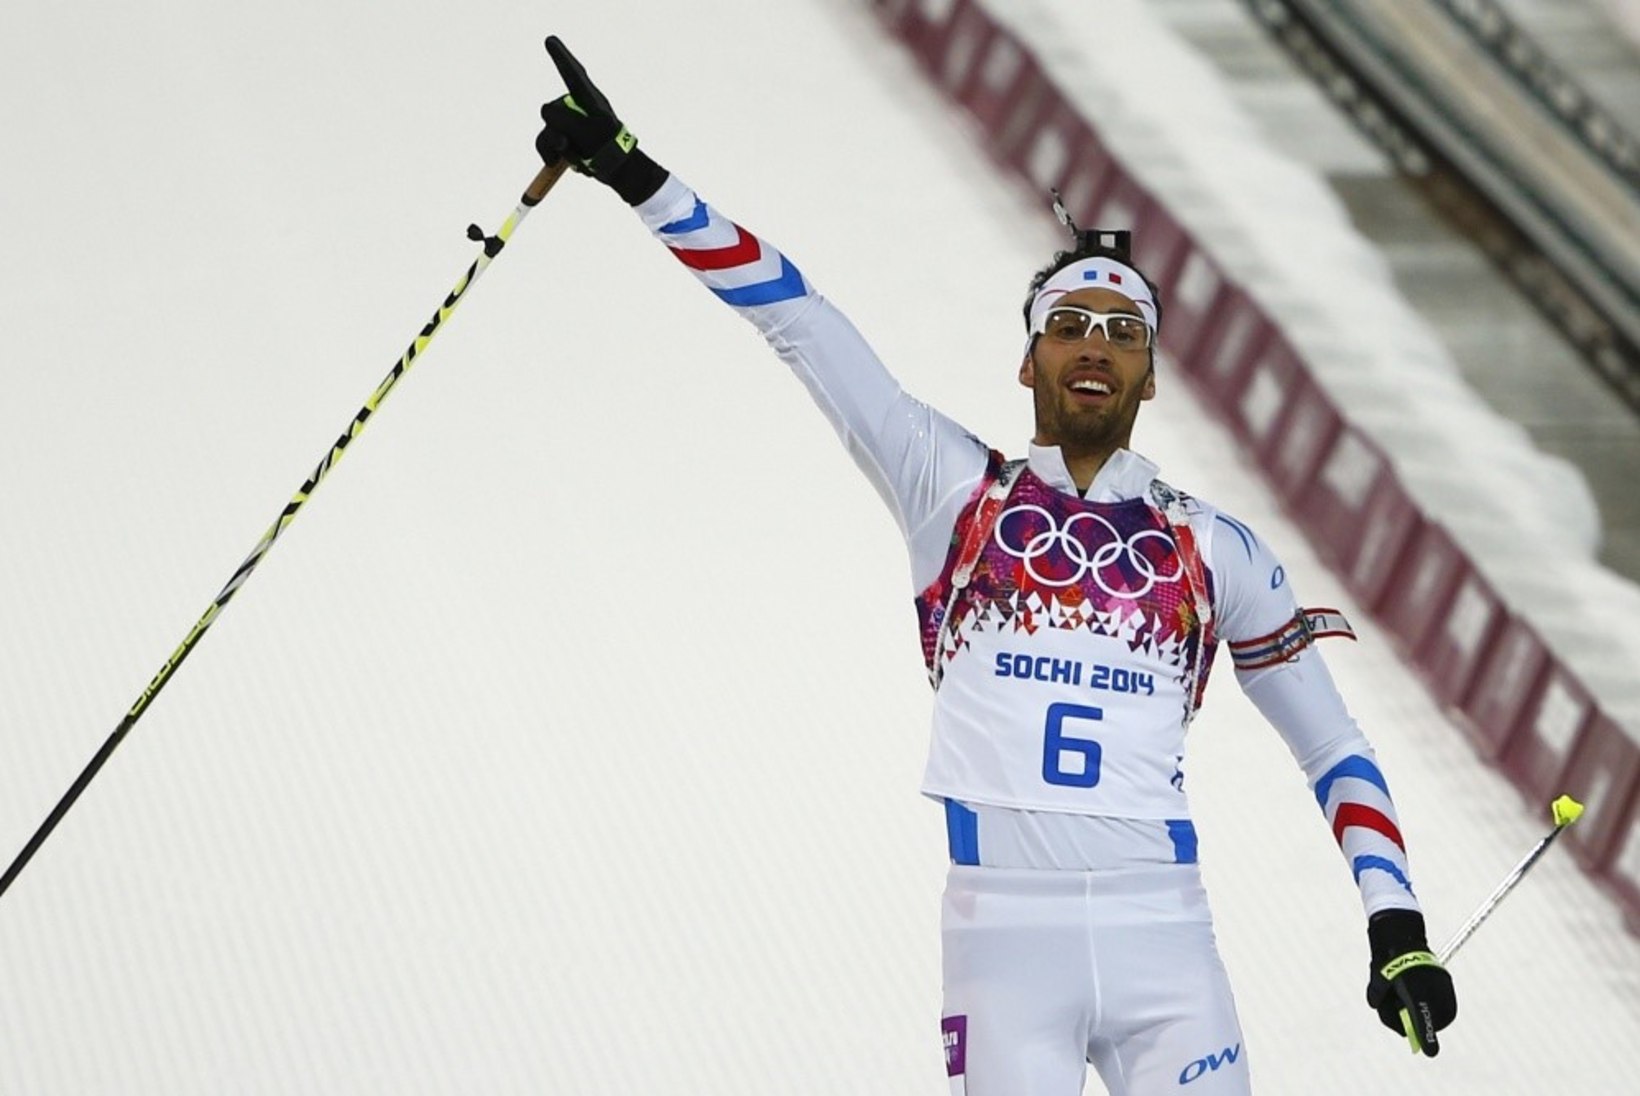 Björndalen jäi ajaloolisest medalist napilt ilma, võitis Fourcade